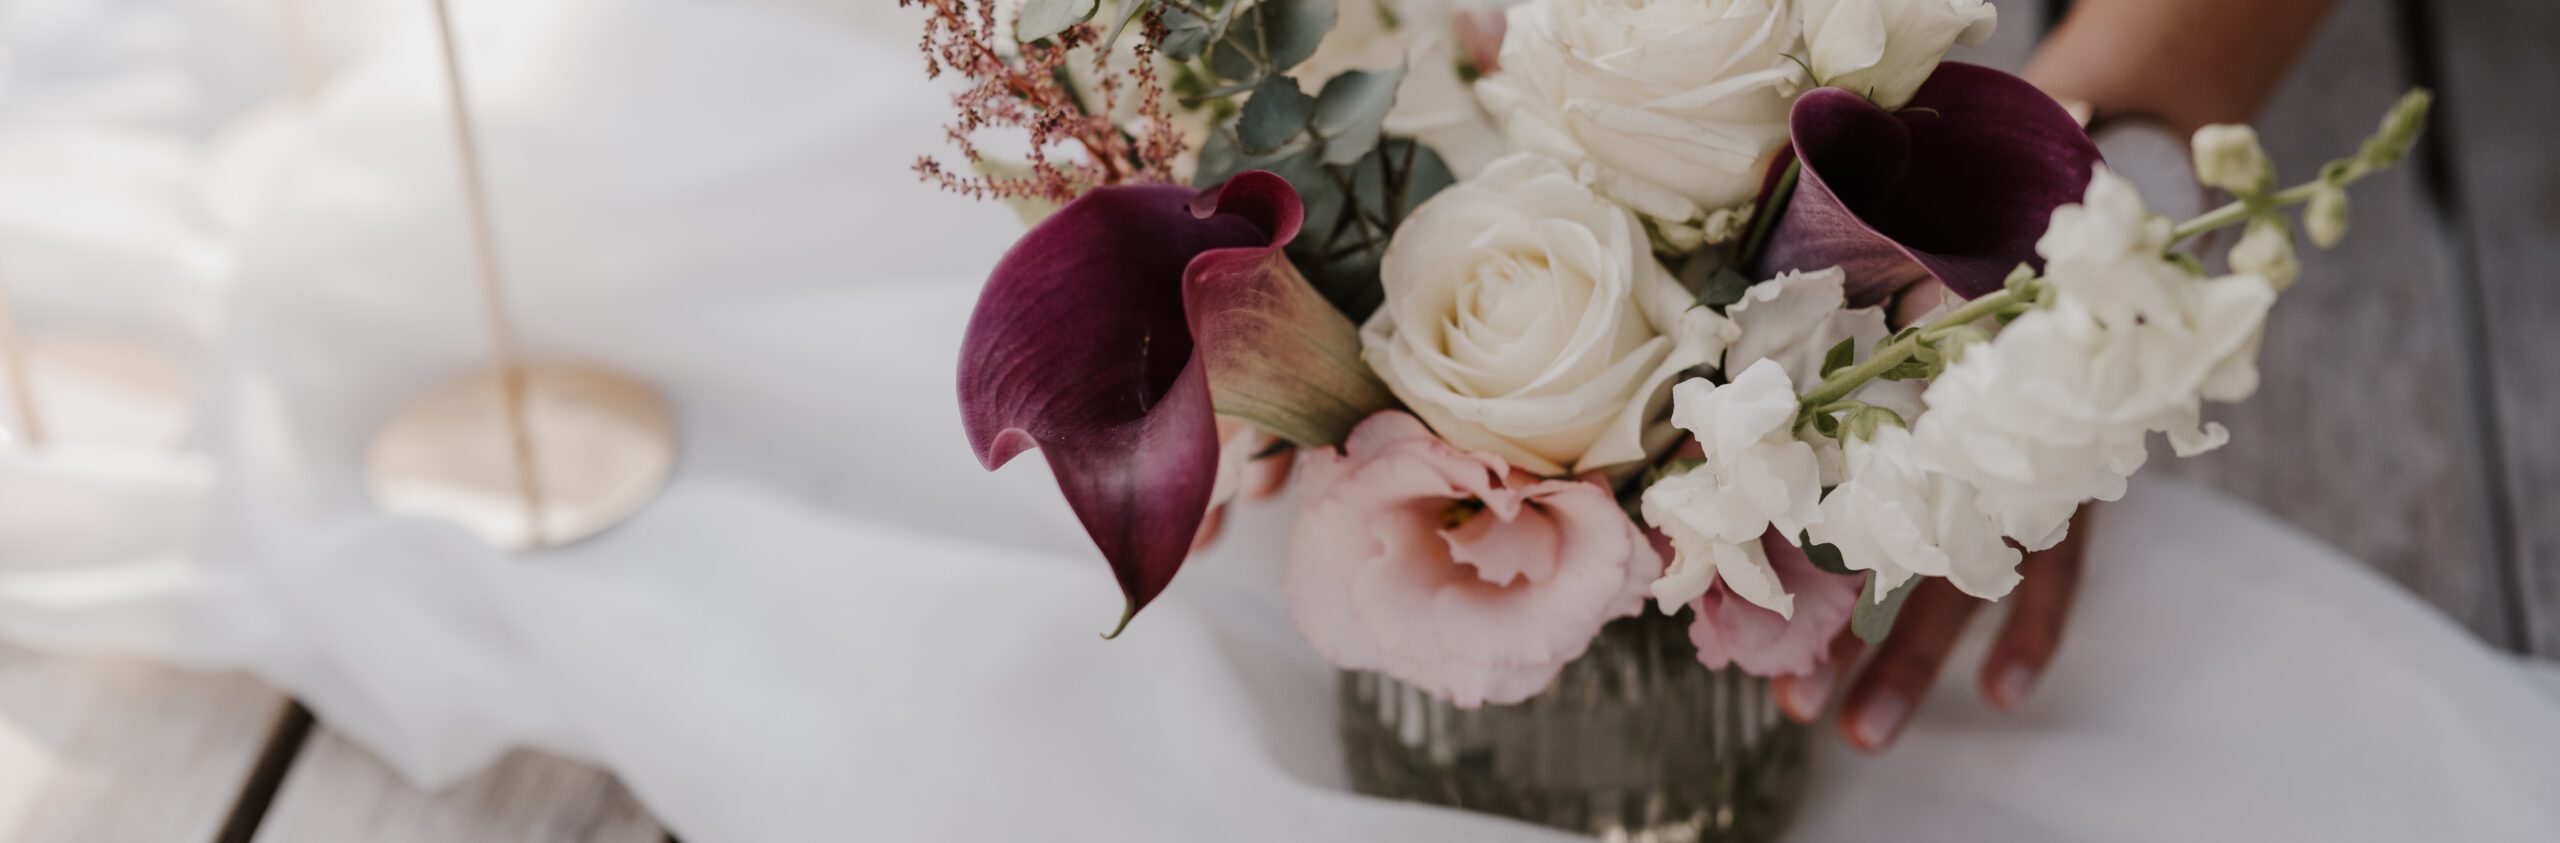 Weiße, rosane und weinrote Blumen in Vase auf einem weißen Dekostoff